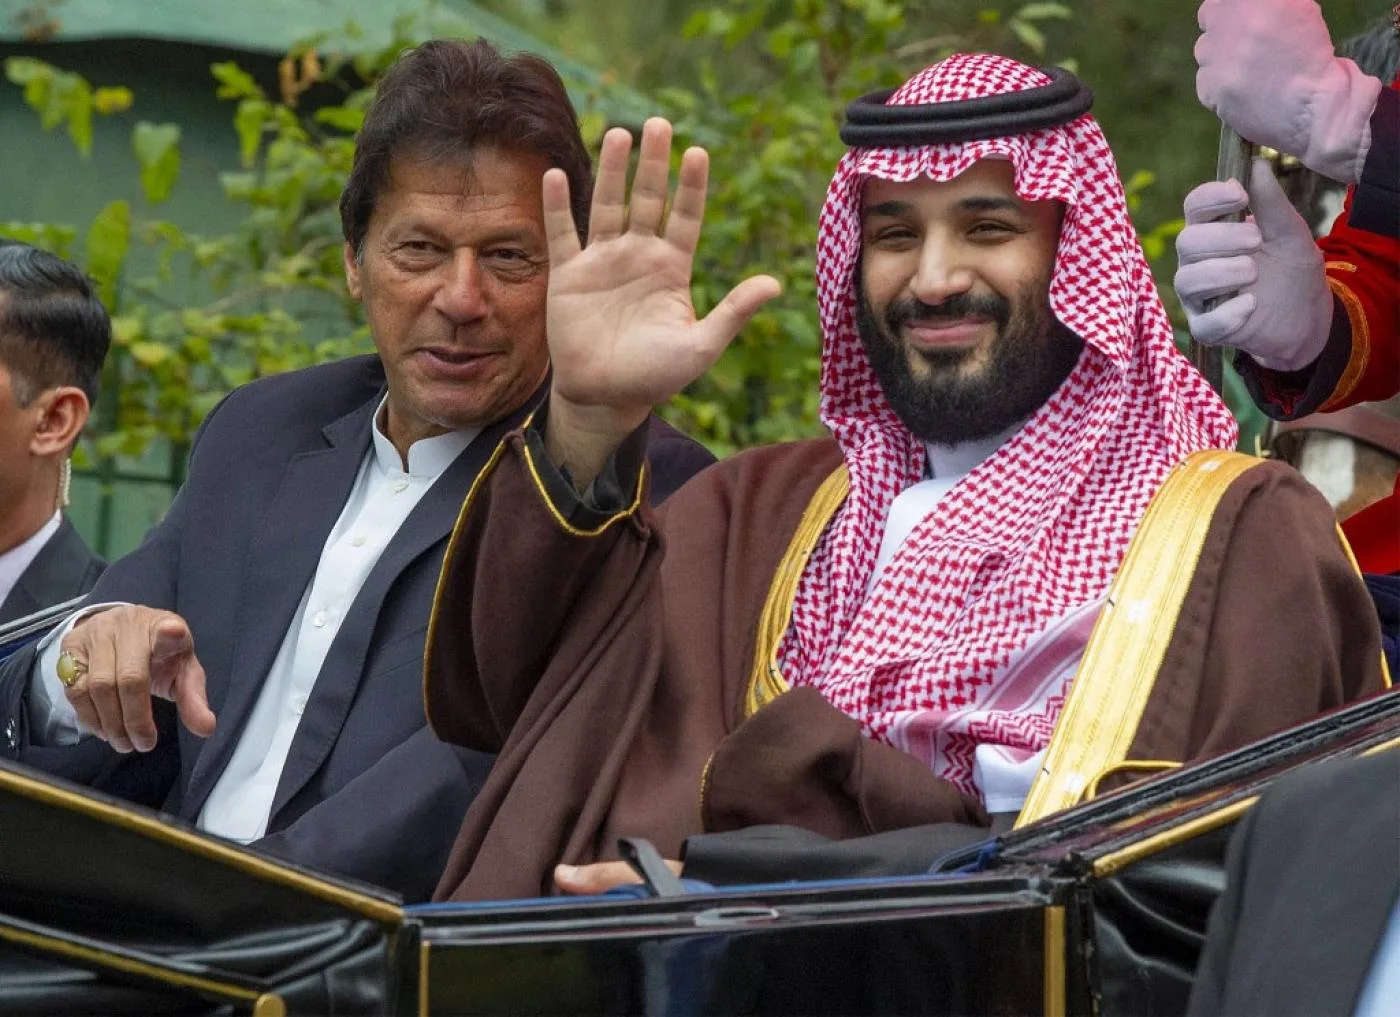 رئيس الوزراء الباكستاني عمران خان وولي العهد السعودي الأمير محمد بن سلمان في إسلام أباد في شباط/ فبراير 2019.